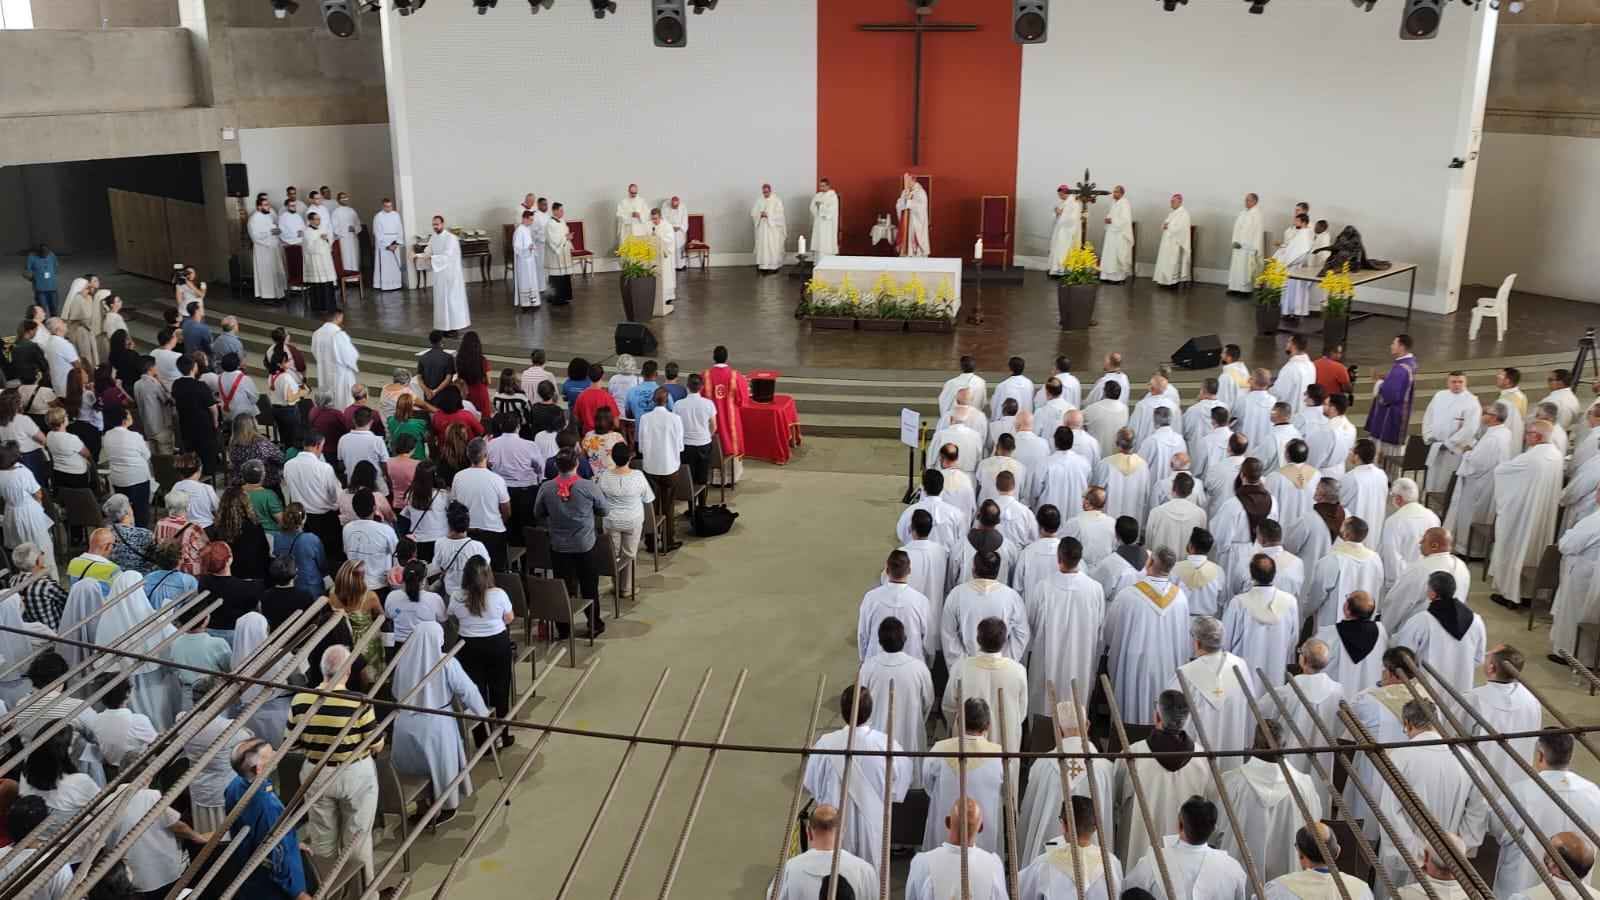 Missa da Unidade, em BH, reúne 400 padres e tem a bênção dos santos óleos - Jair Amaral/EM/D.A/Press